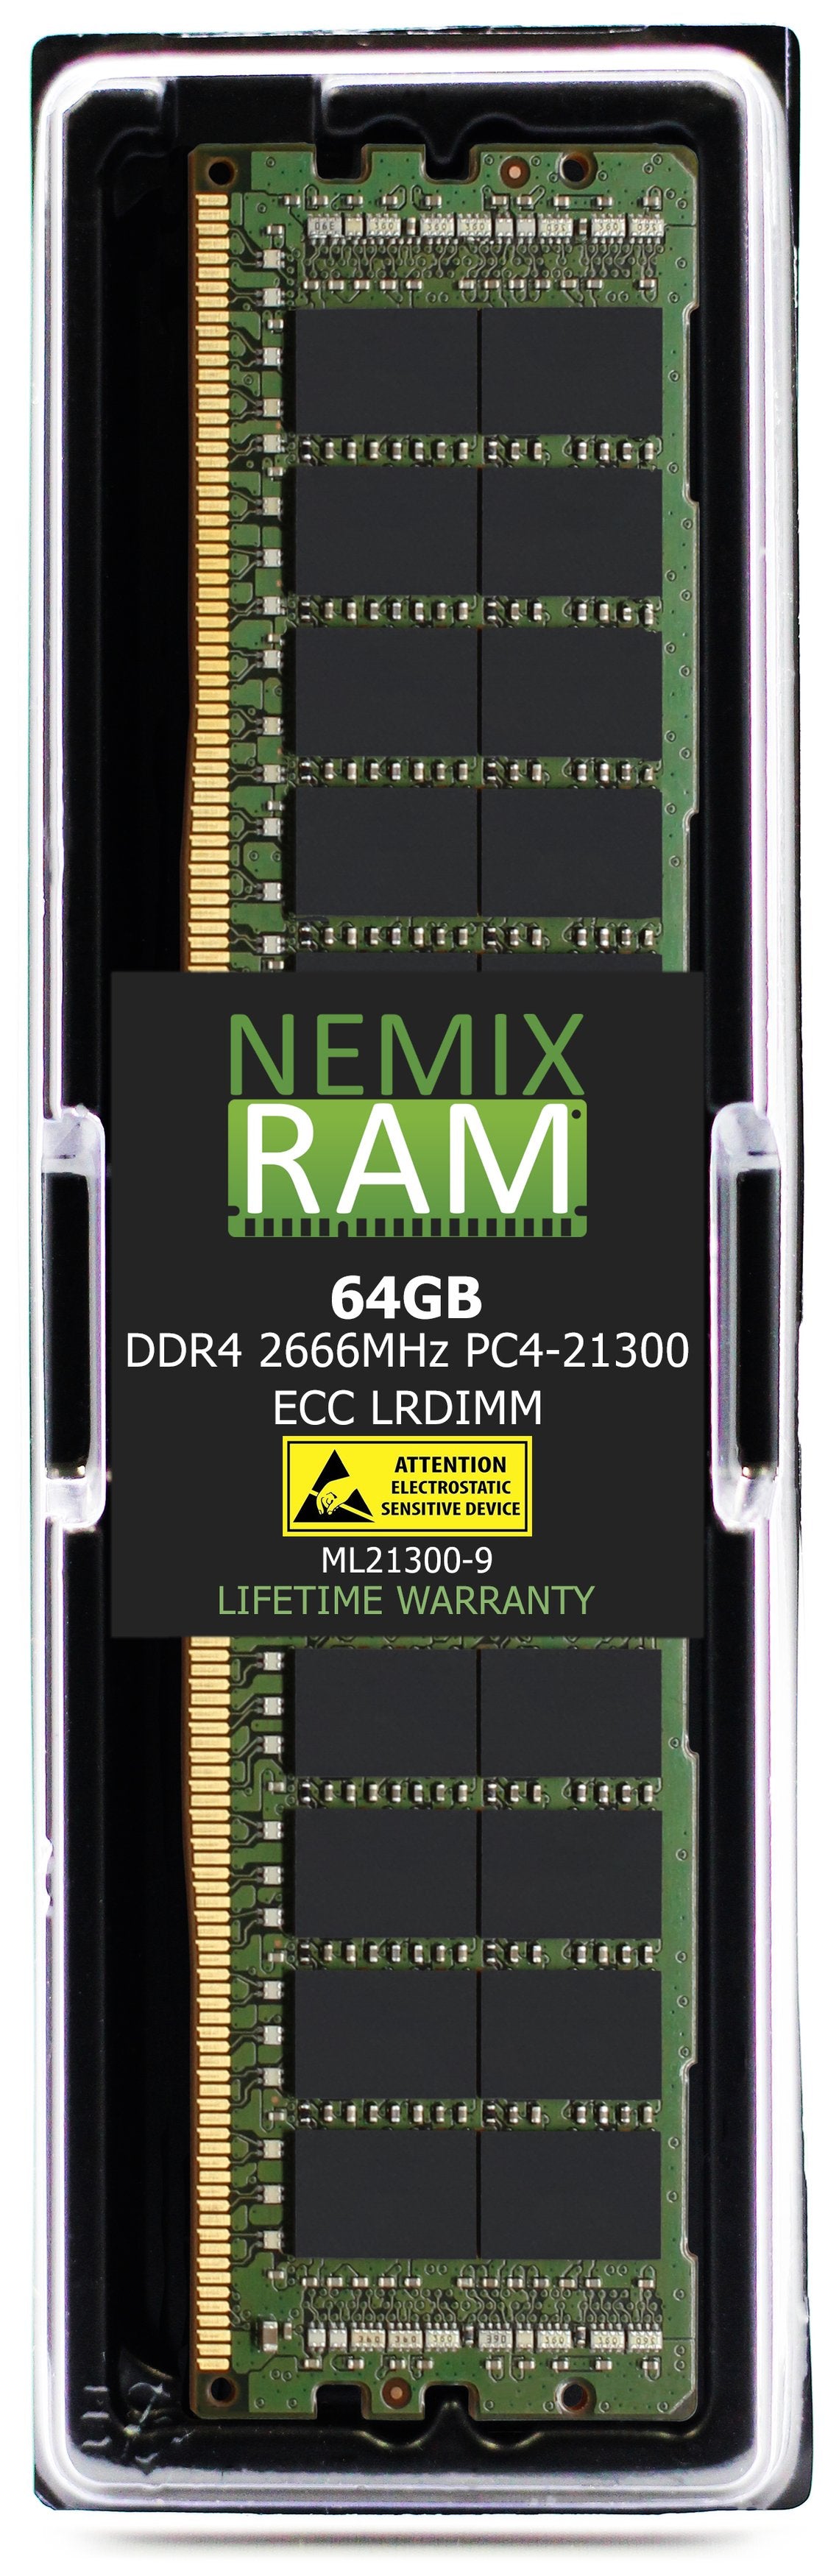 Hynix HMAA8GL7AMR4N-VK 64GB DDR4 2666MHZ PC4-21300 LRDIMM Compatible Memory Module